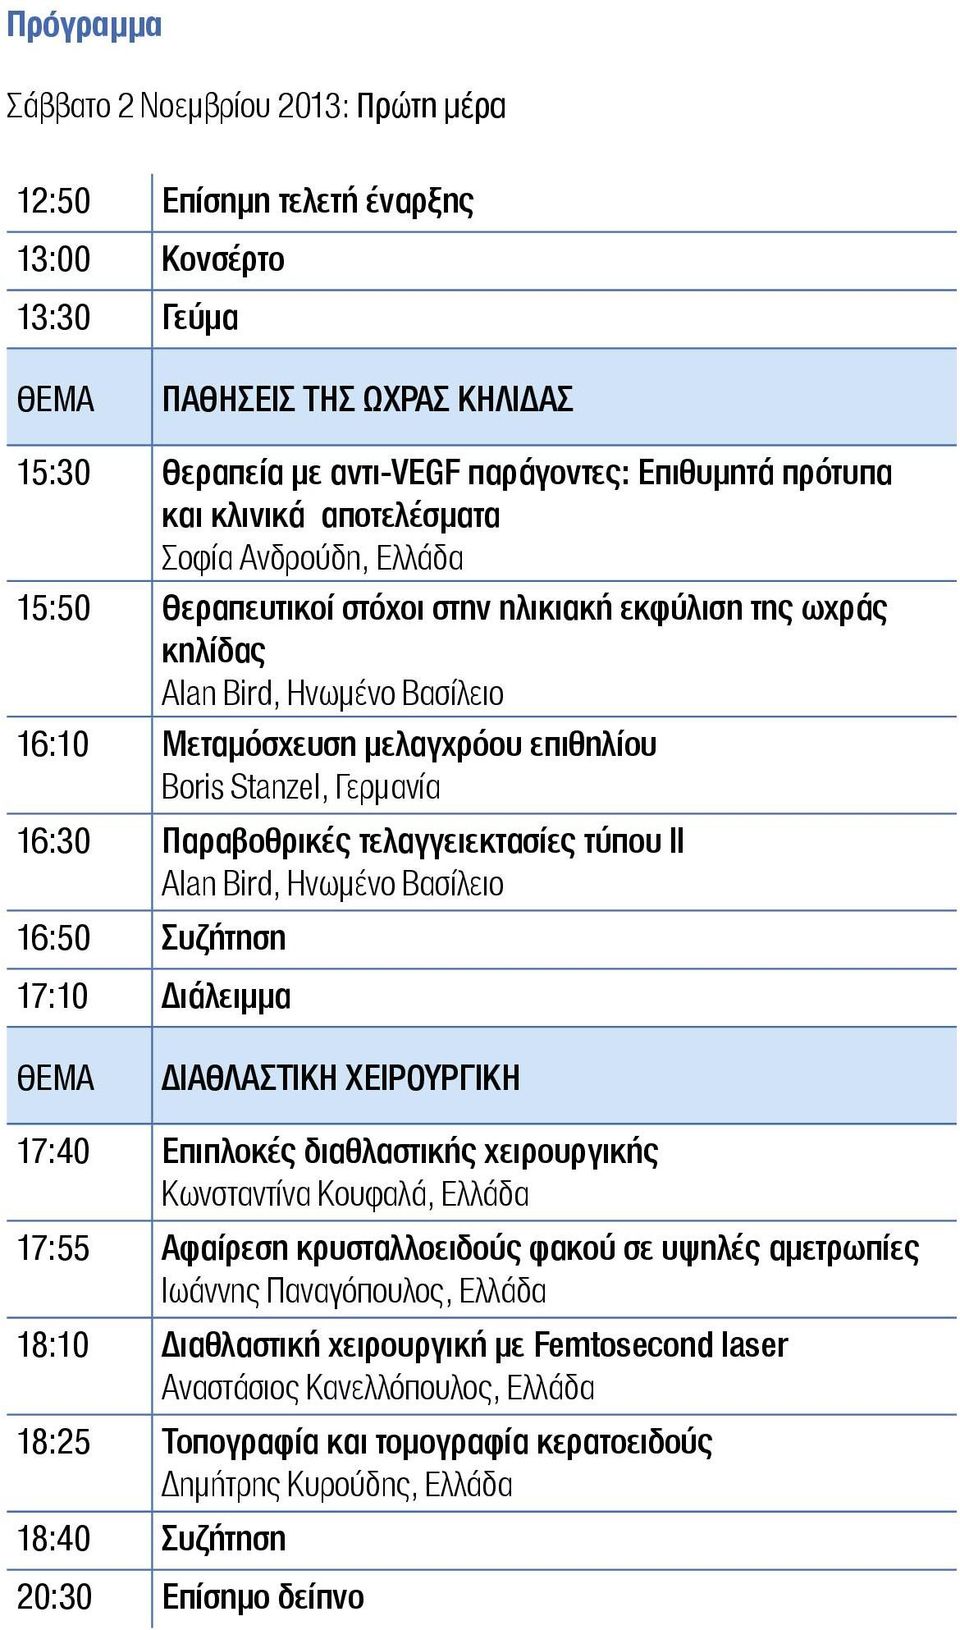 16:30 Παραβοθρικές τελαγγειεκτασίες τύπου ΙΙ Alan Bird, Ηνωμένο Βασίλειο 16:50 Συζήτηση 17:10 Διάλειμμα ΔΙΑΘΛΑΣΤΙΚΗ ΧΕΙΡΟΥΡΓΙΚΗ 17:40 Επιπλοκές διαθλαστικής χειρουργικής Κωνσταντίνα Κουφαλά, Ελλάδα